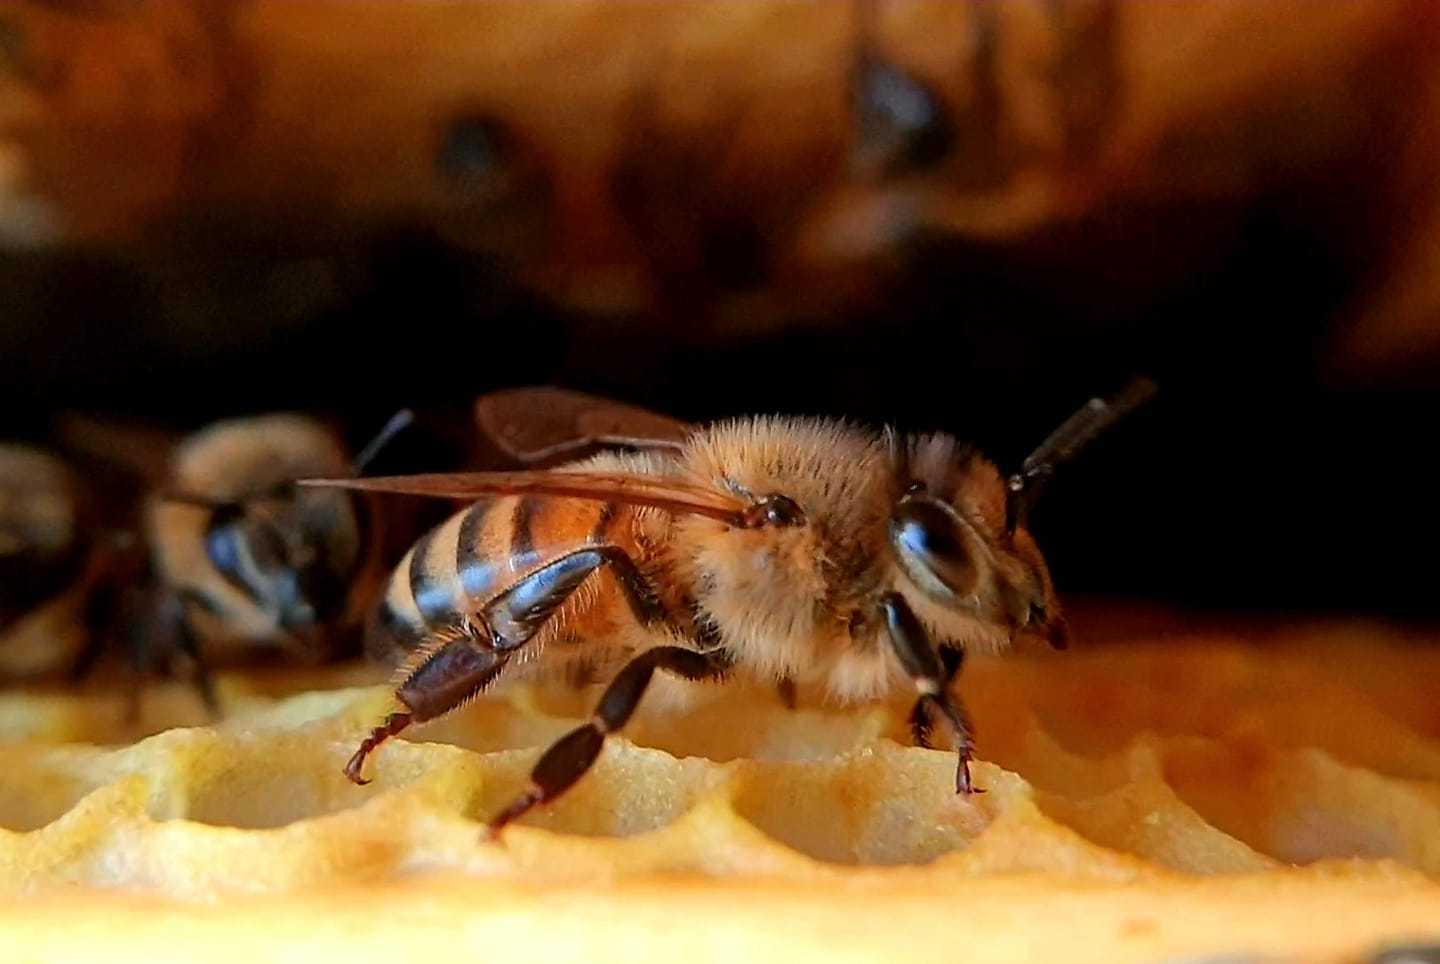 Foto all'interno dell'arnia di un ape operaia.